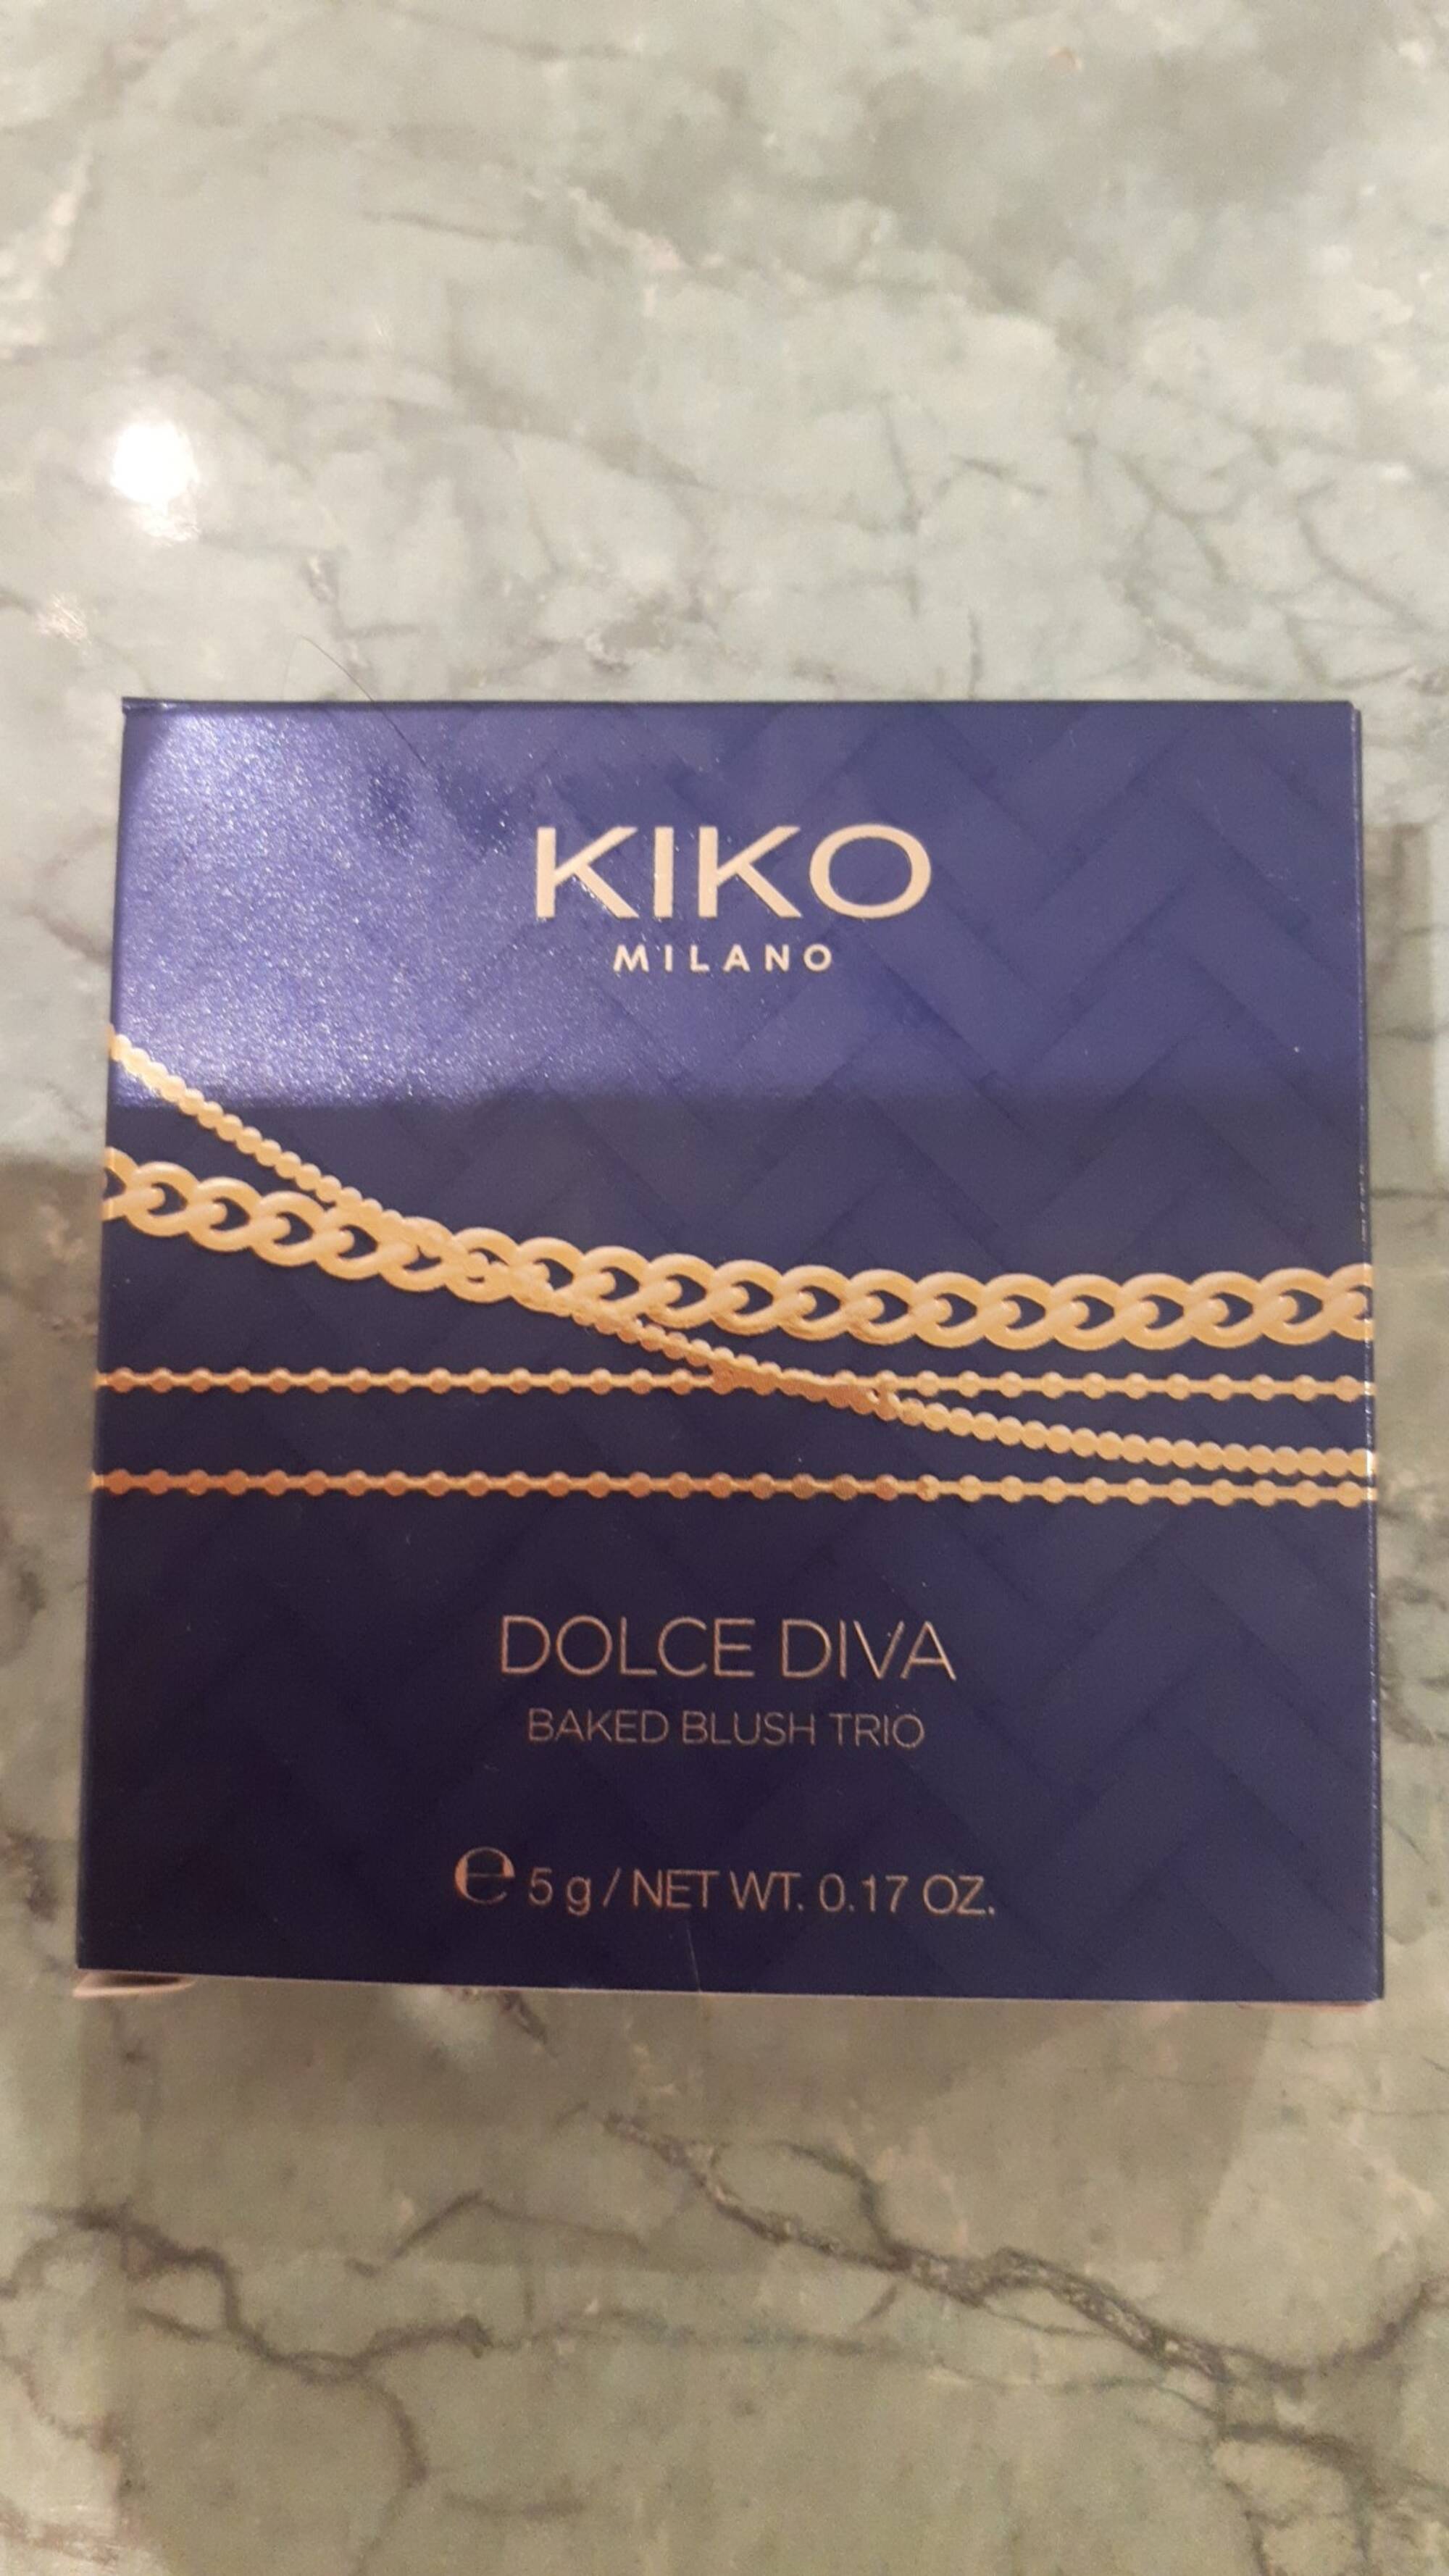 KIKO - Dolce diva baked blush trio